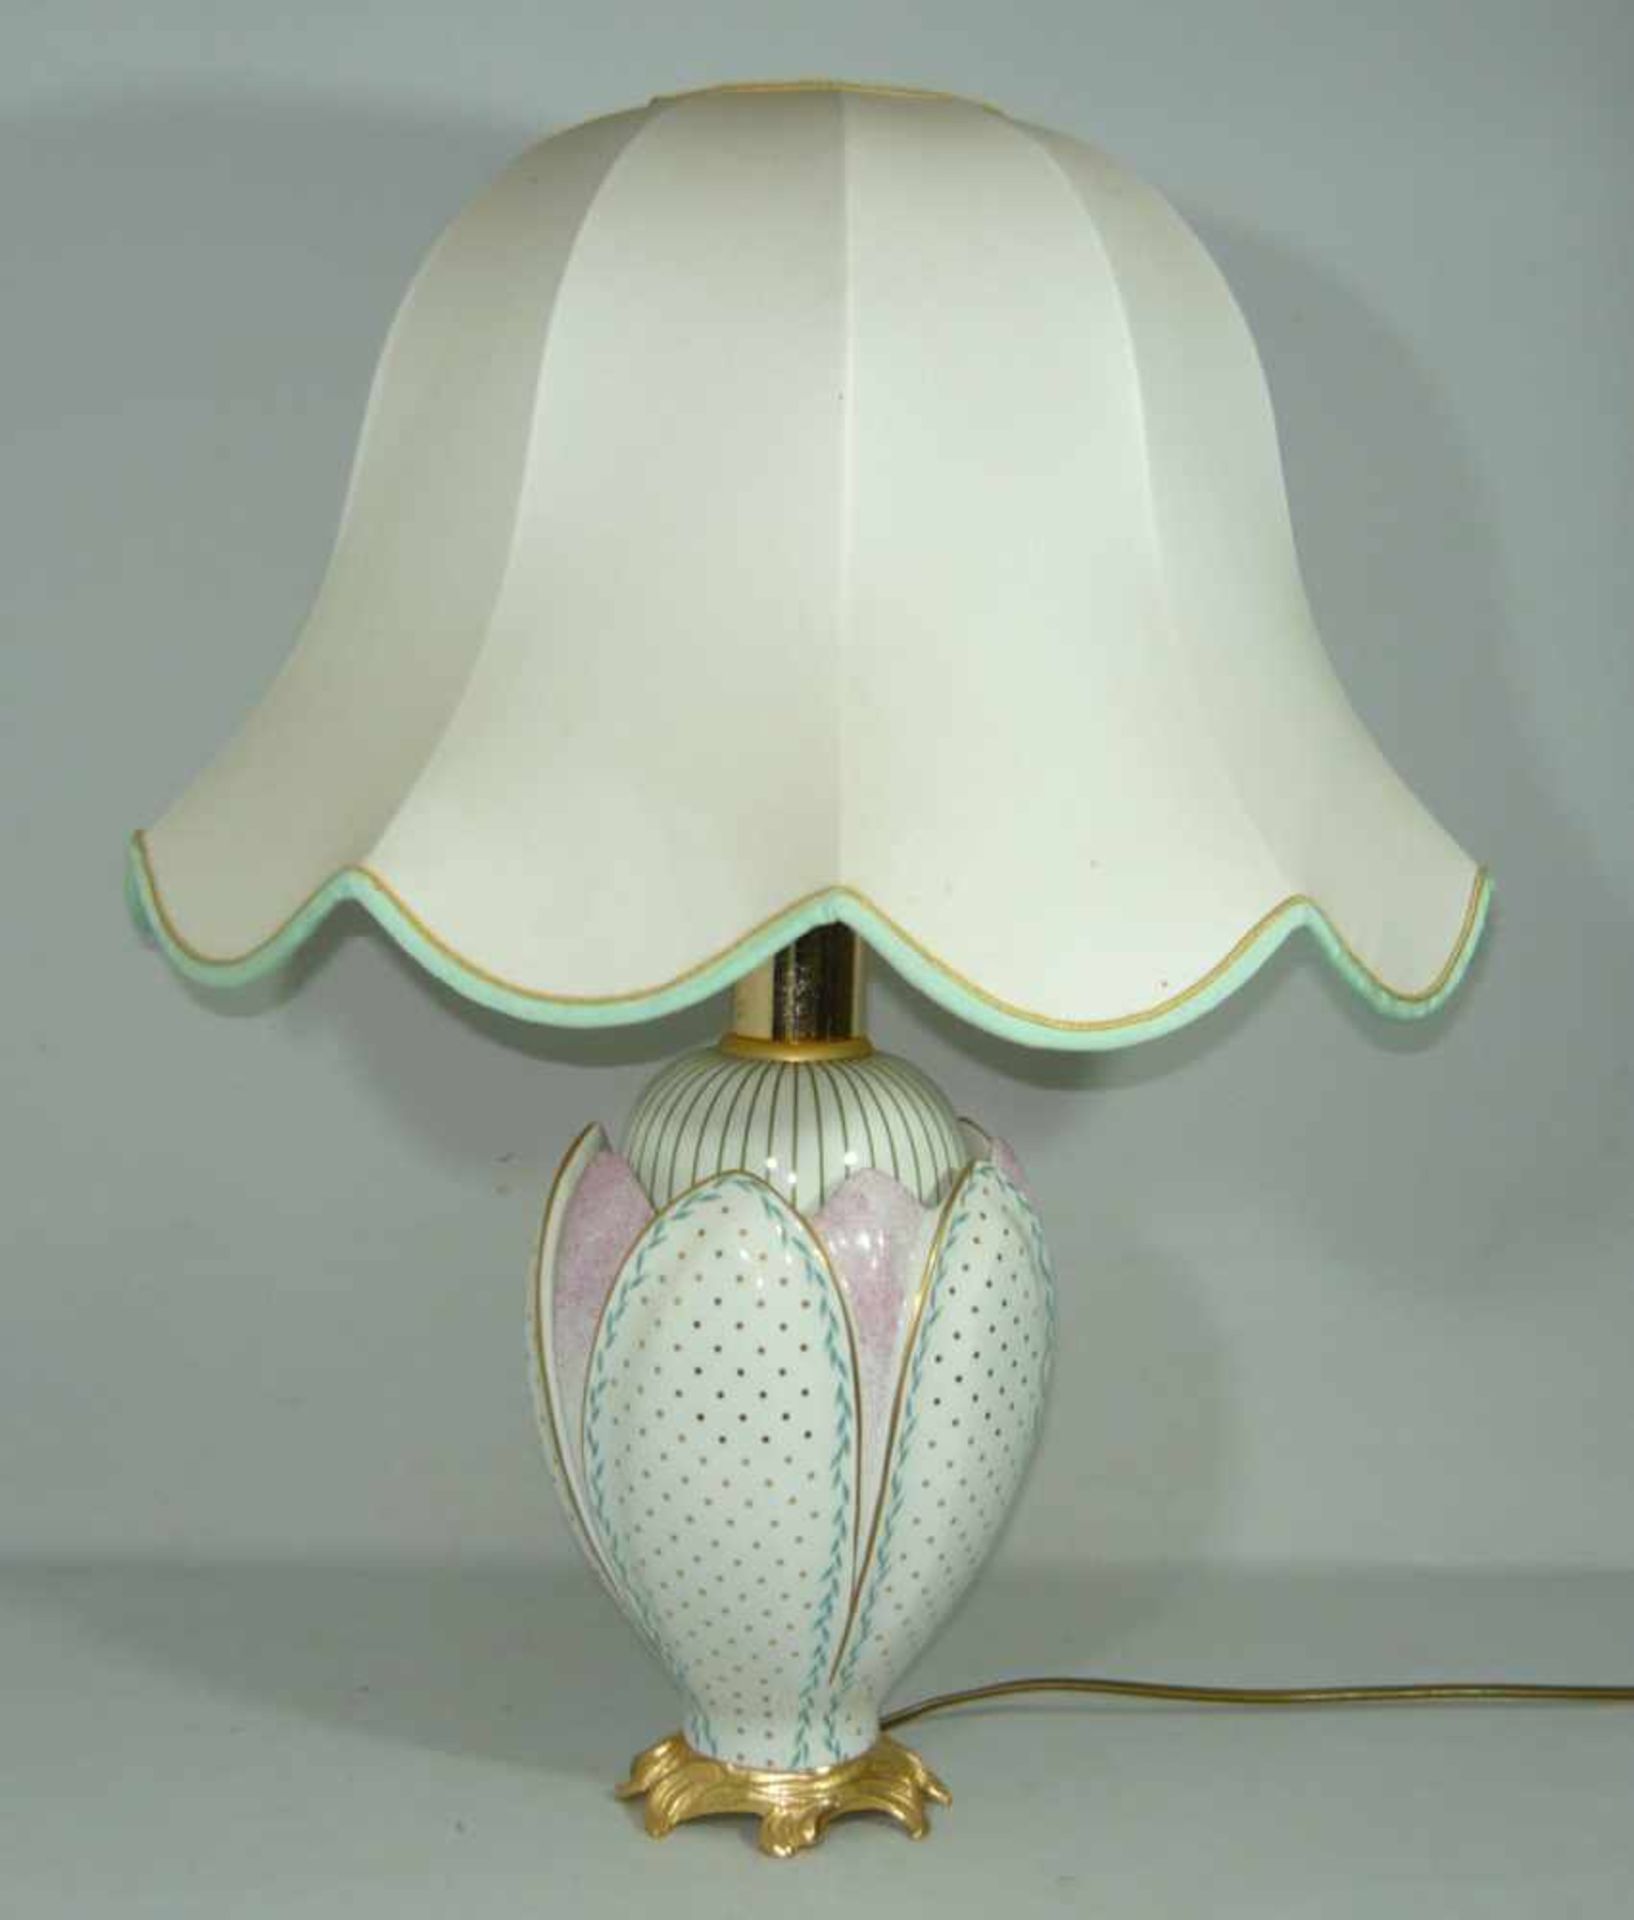 Große Porzellantischlampe mit Schirm. Wohl Kaiser oder Sèvres. H. ca. 60 cm. Large china table